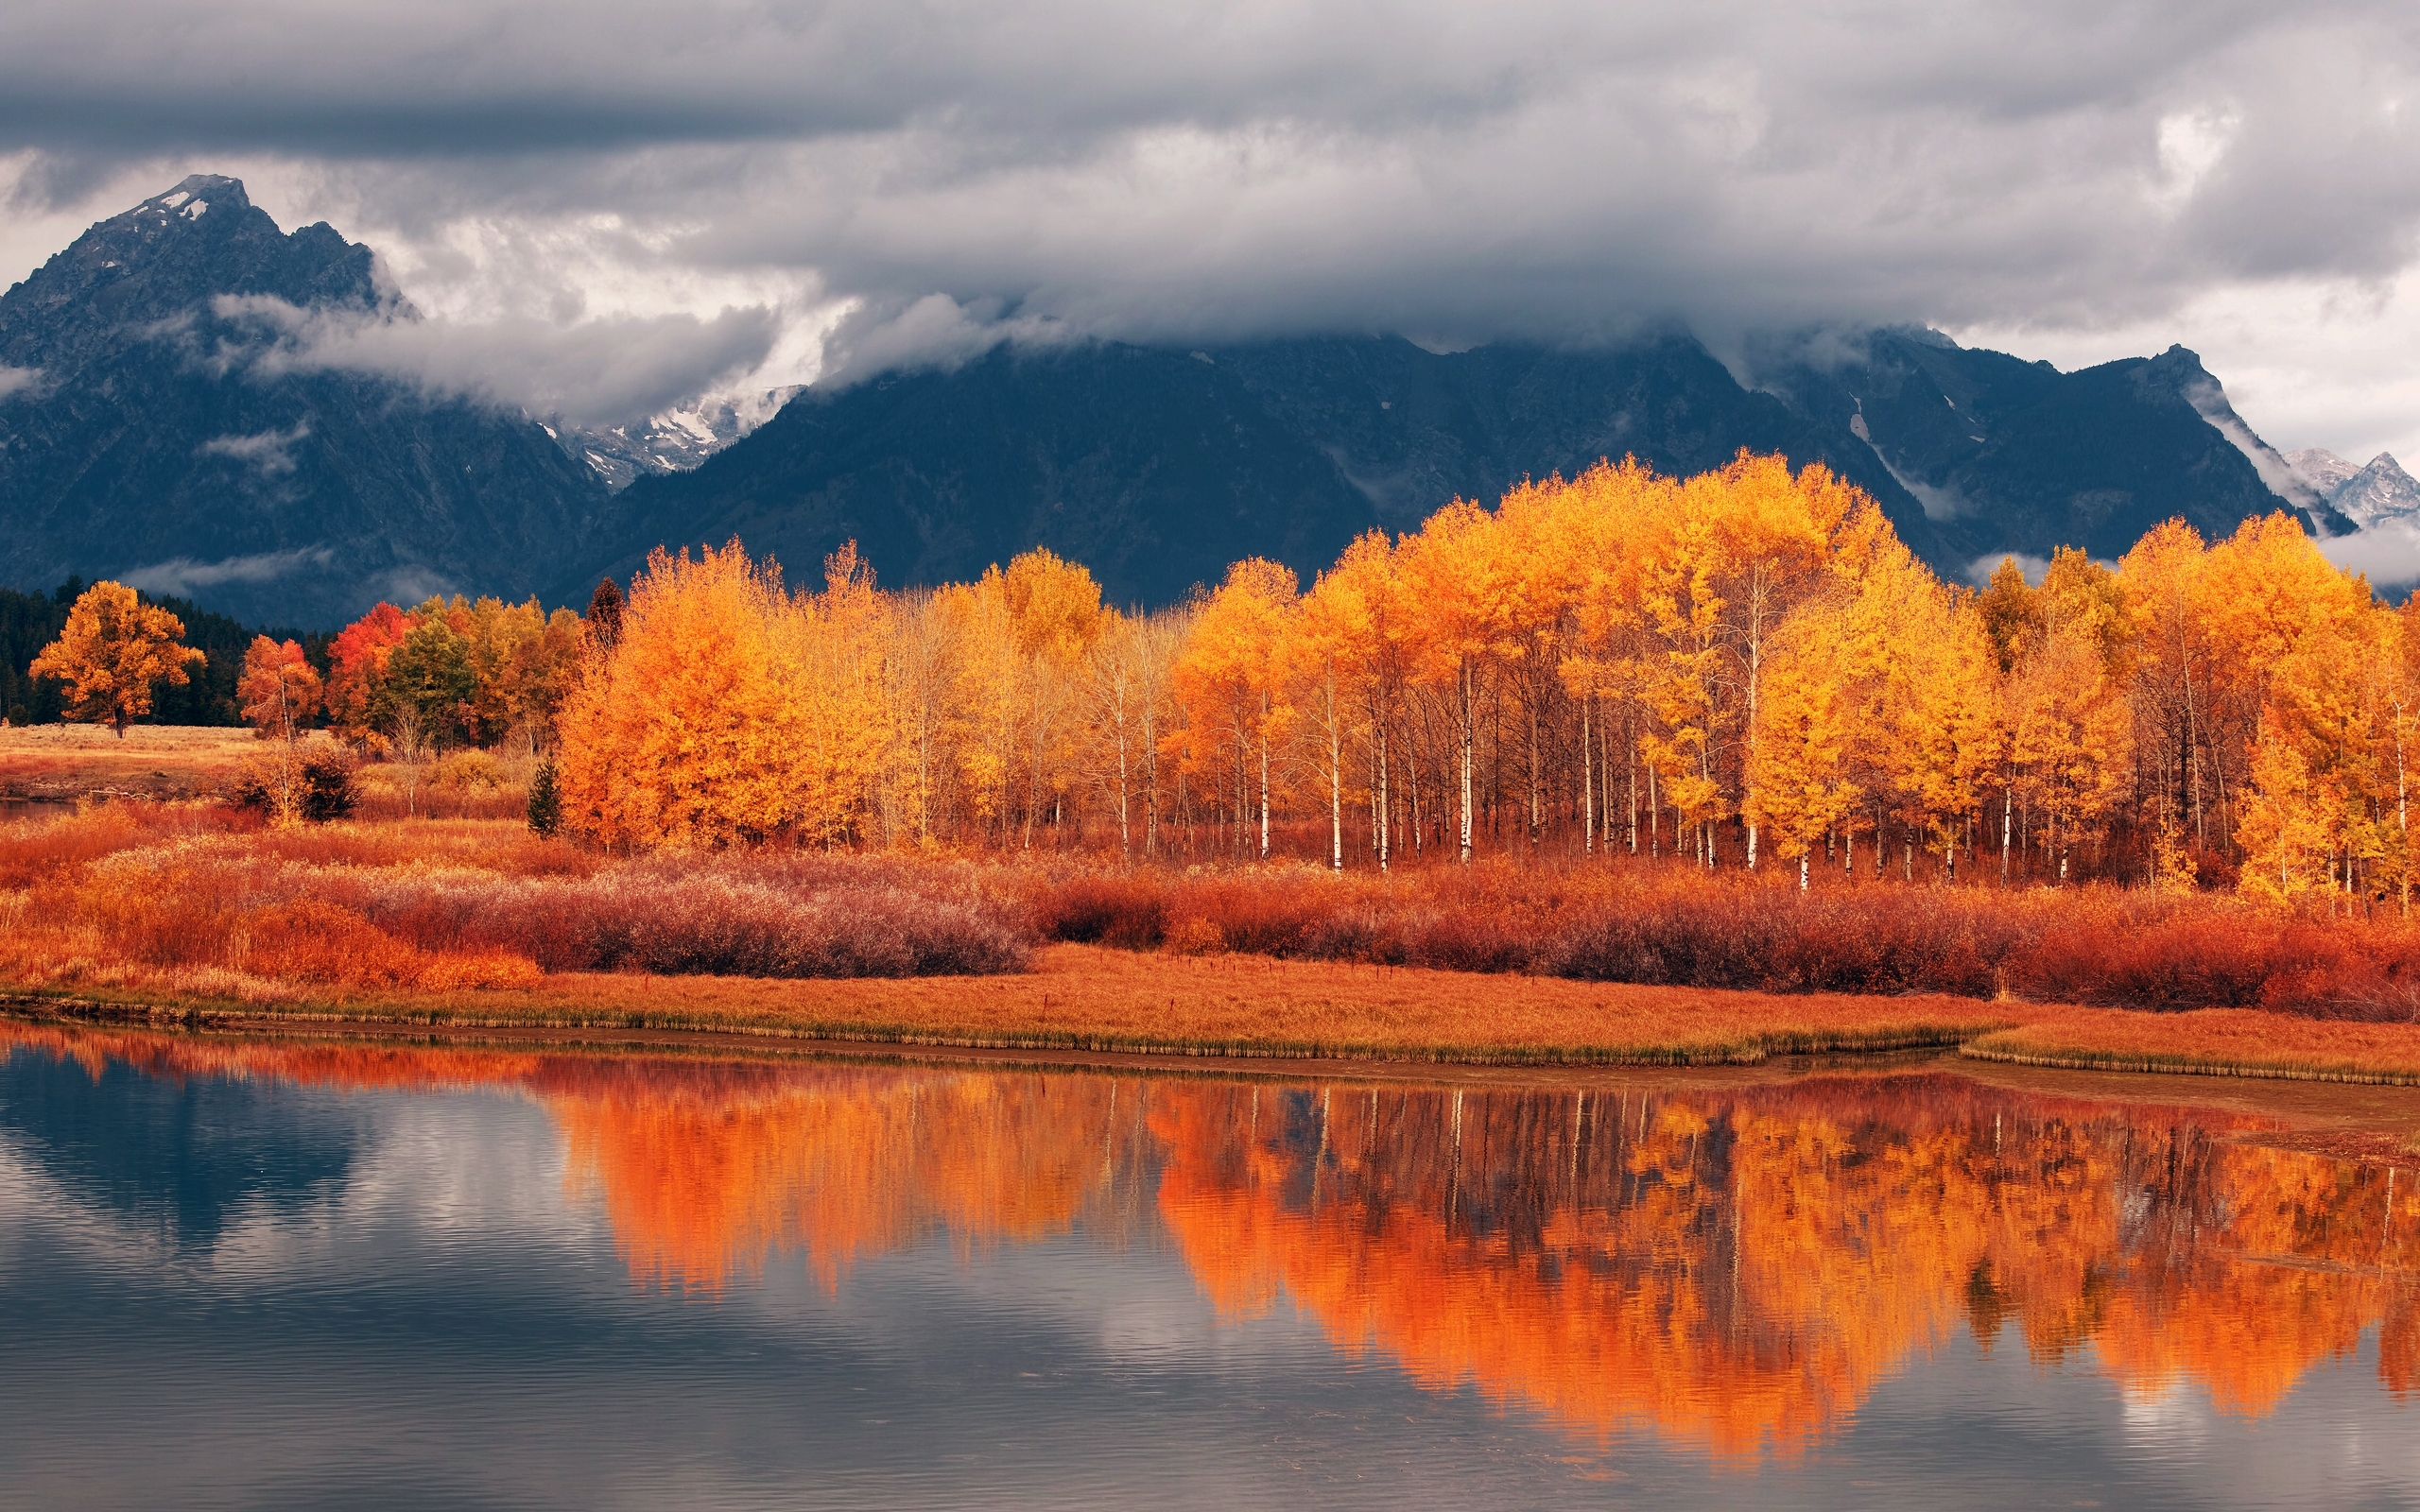 Free download wallpaper Rivers, Landscape, Autumn on your PC desktop